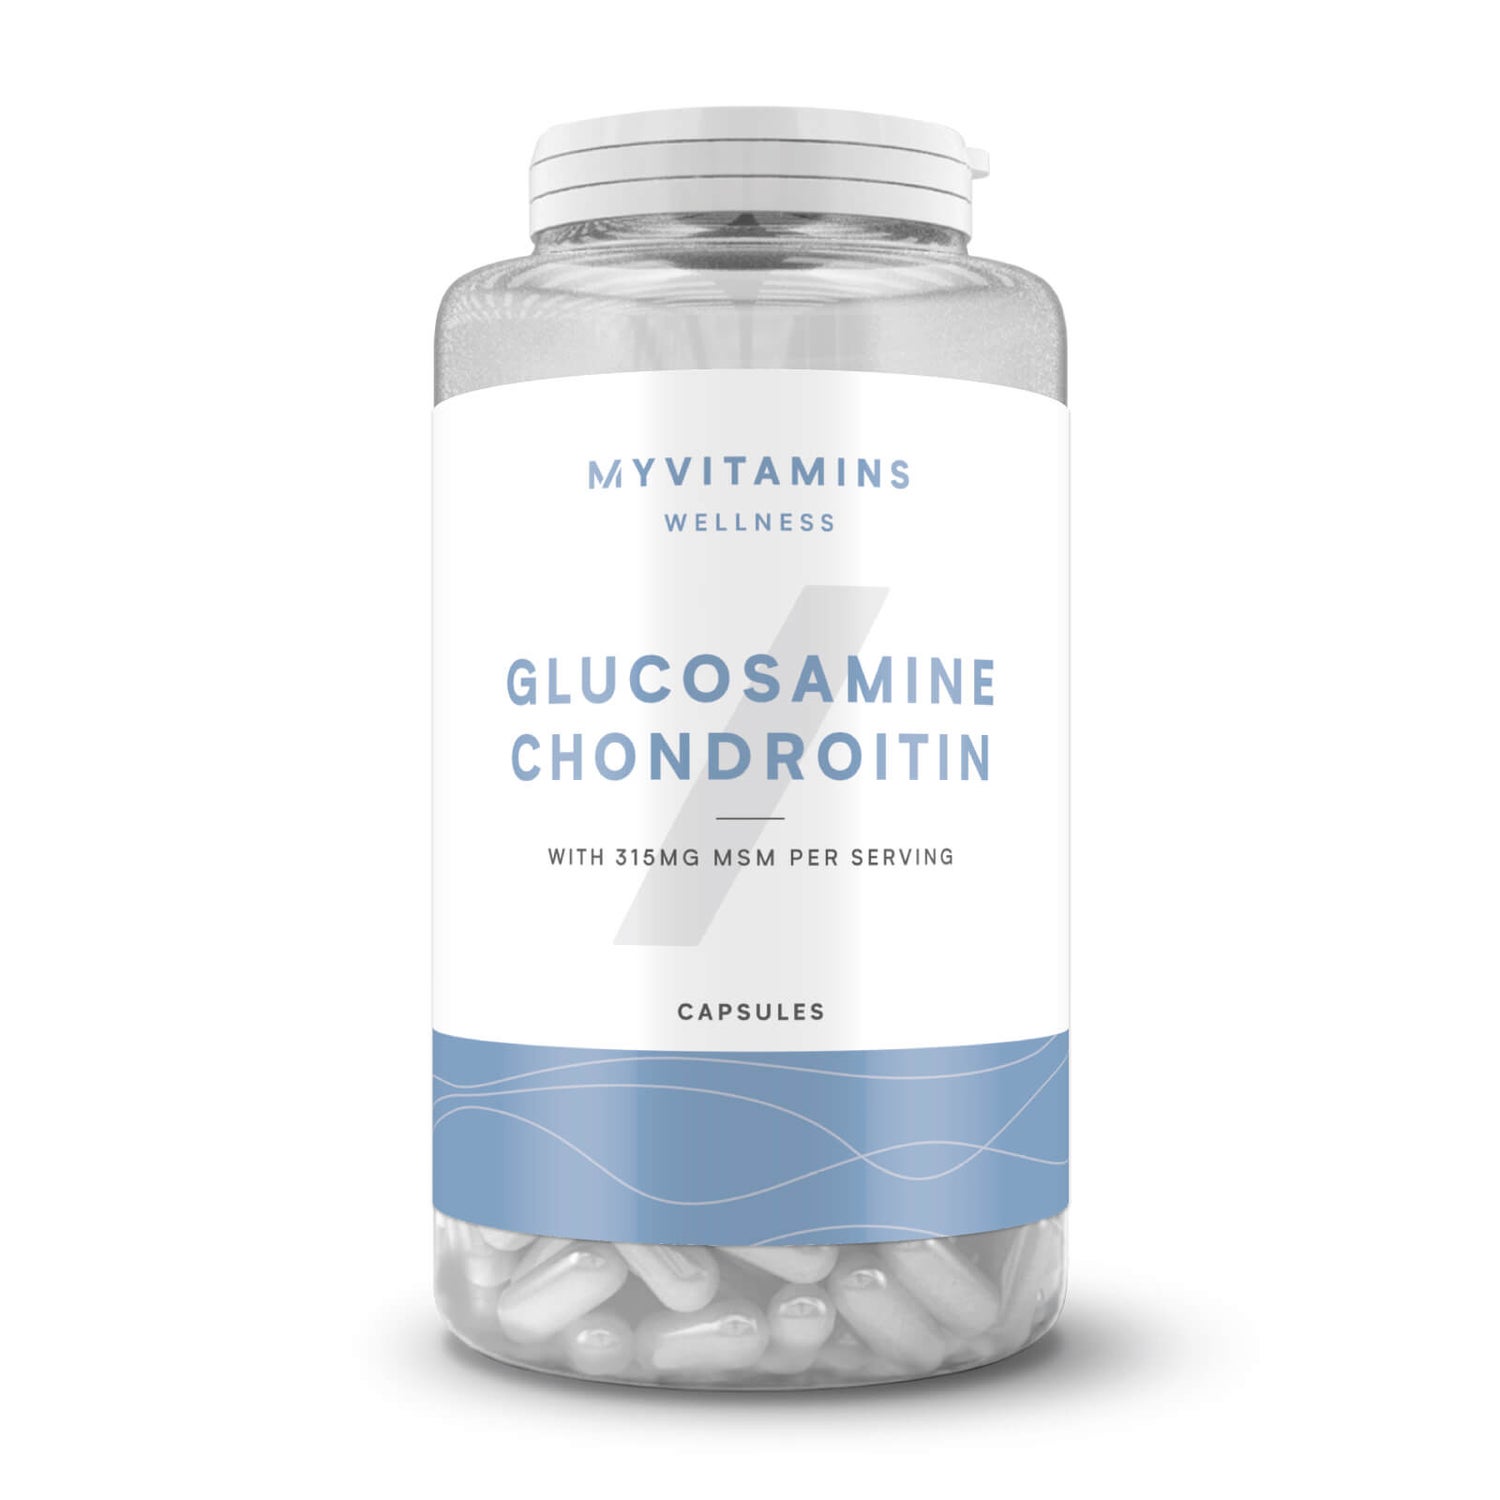 Glucosamina Condroitina